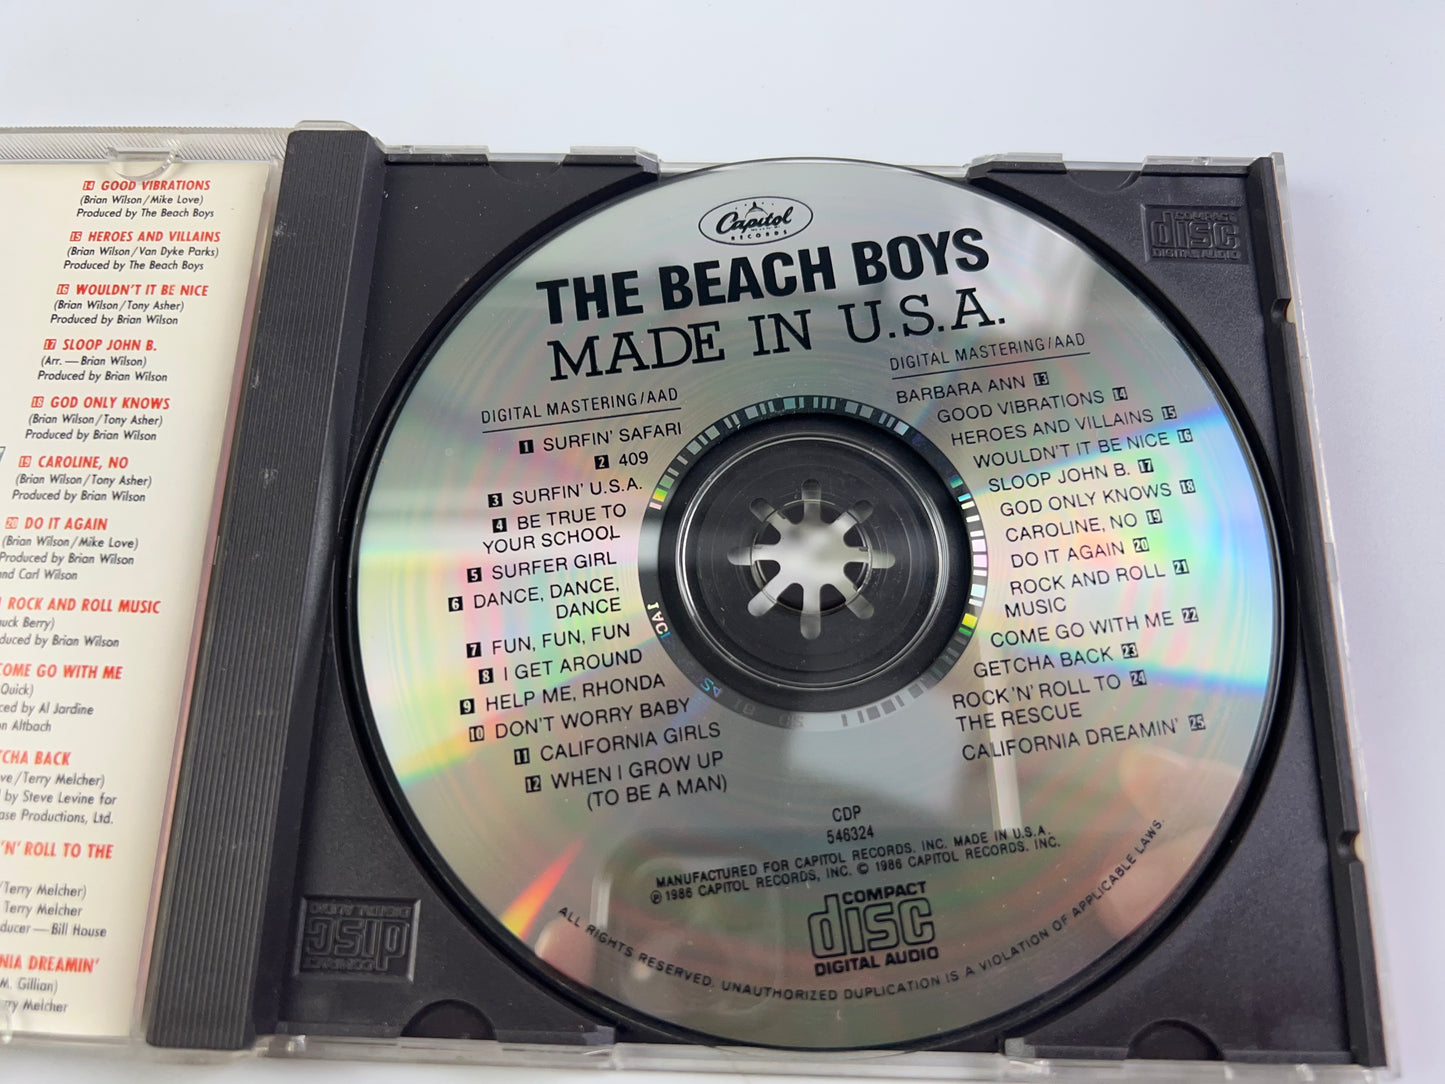 The Beach Boys - Made in U.S.A. (CD, 1986, Capitol/EMI Records)